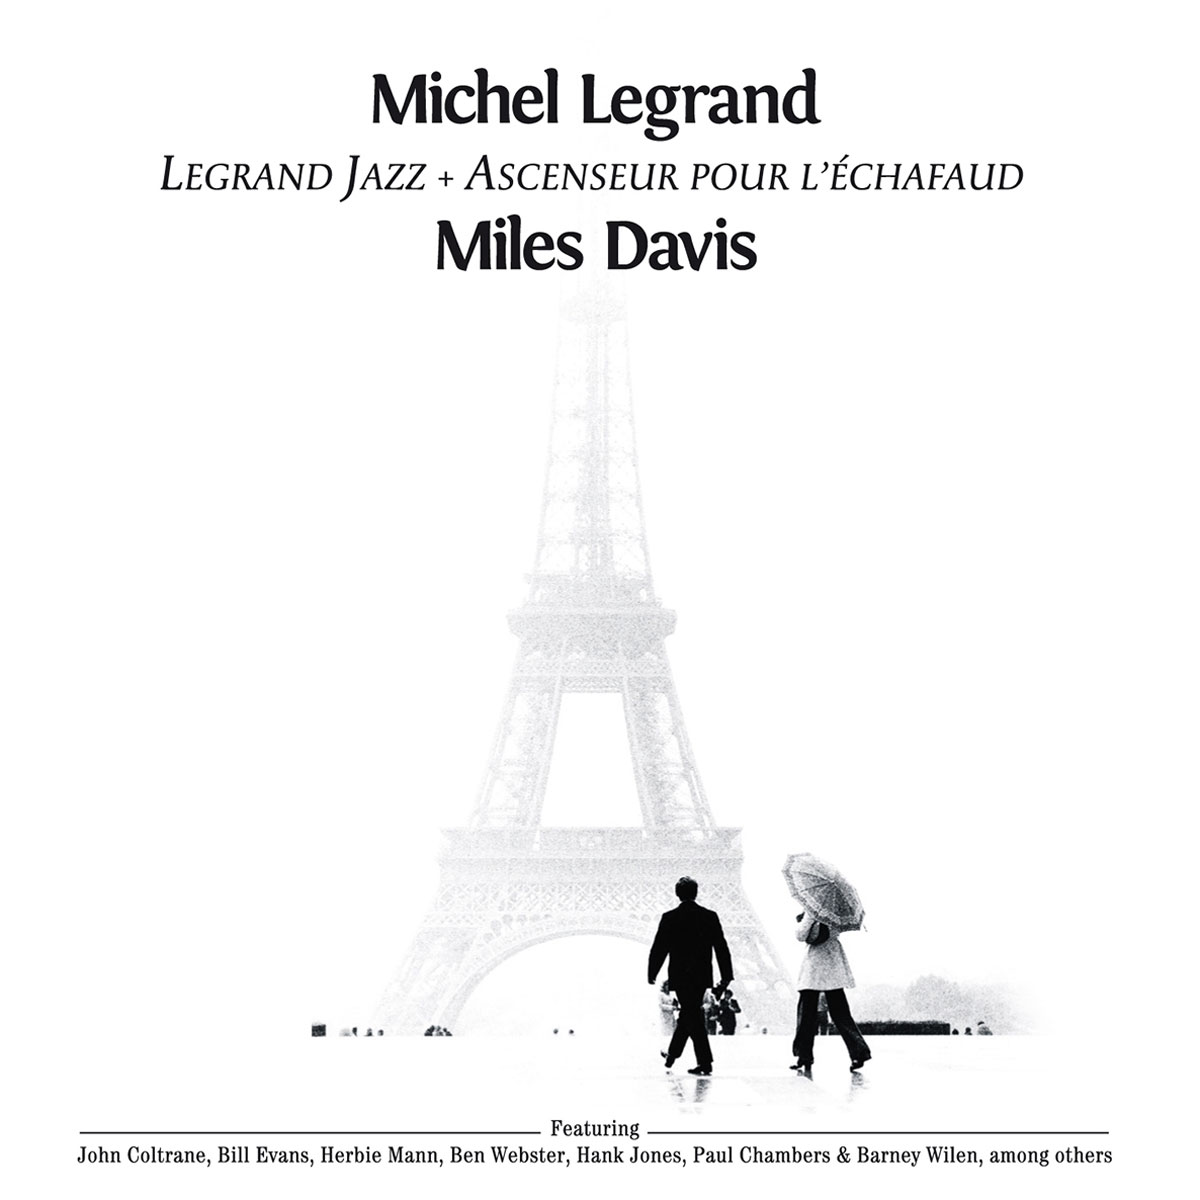 Legrand Jazz + Ascenseur Pour L'Echafaud